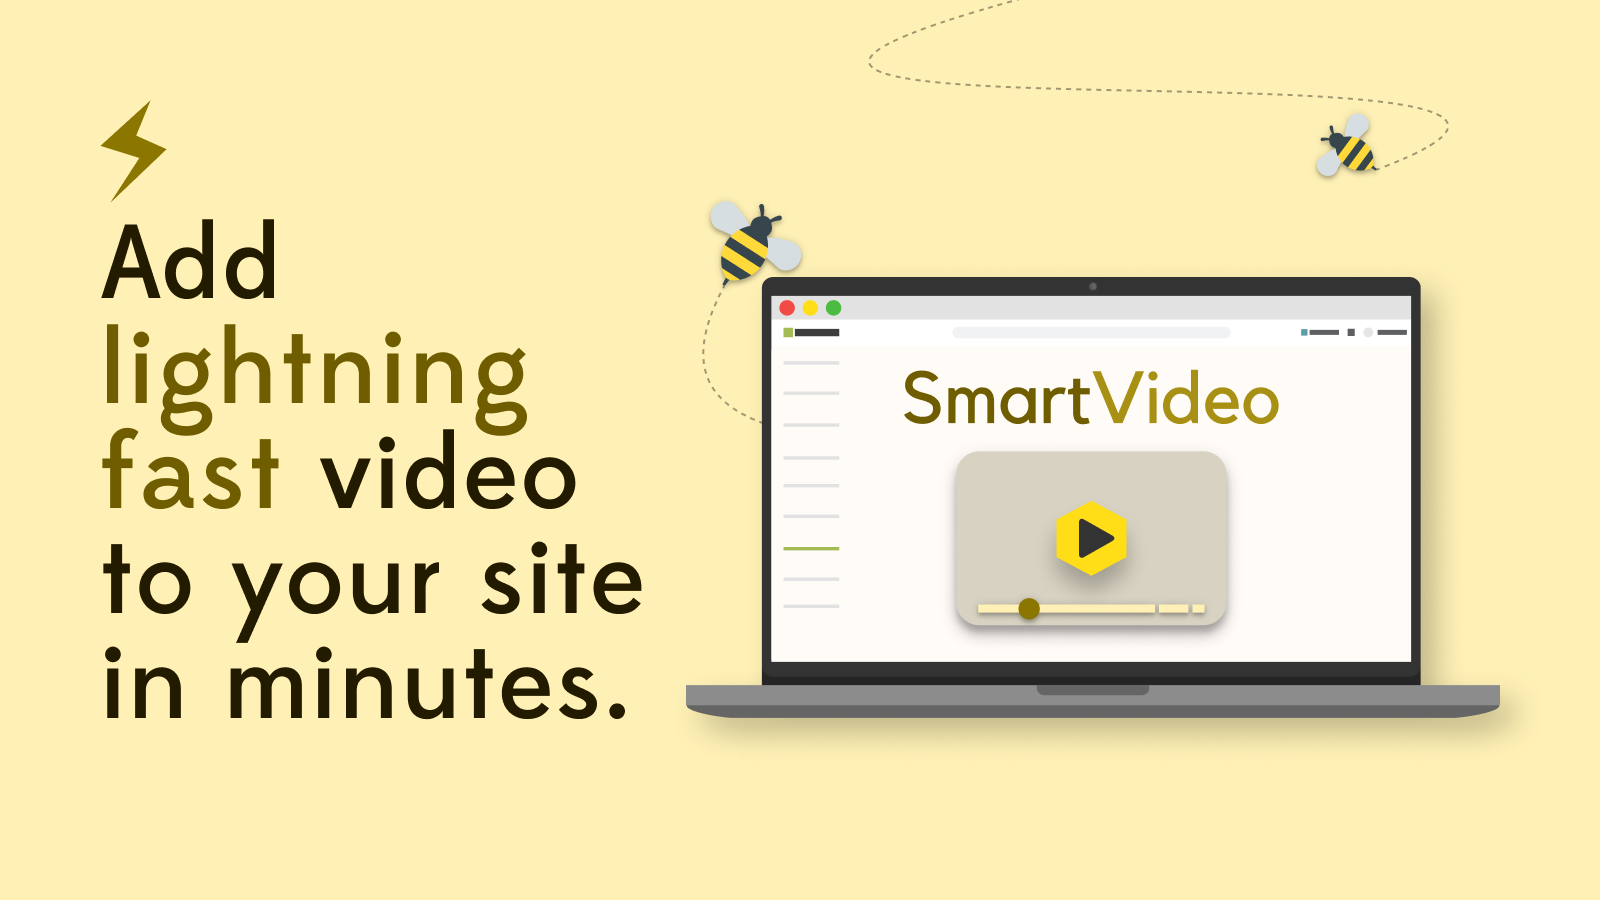 voeg in enkele minuten razendsnelle video toe aan uw site met SmartVideo